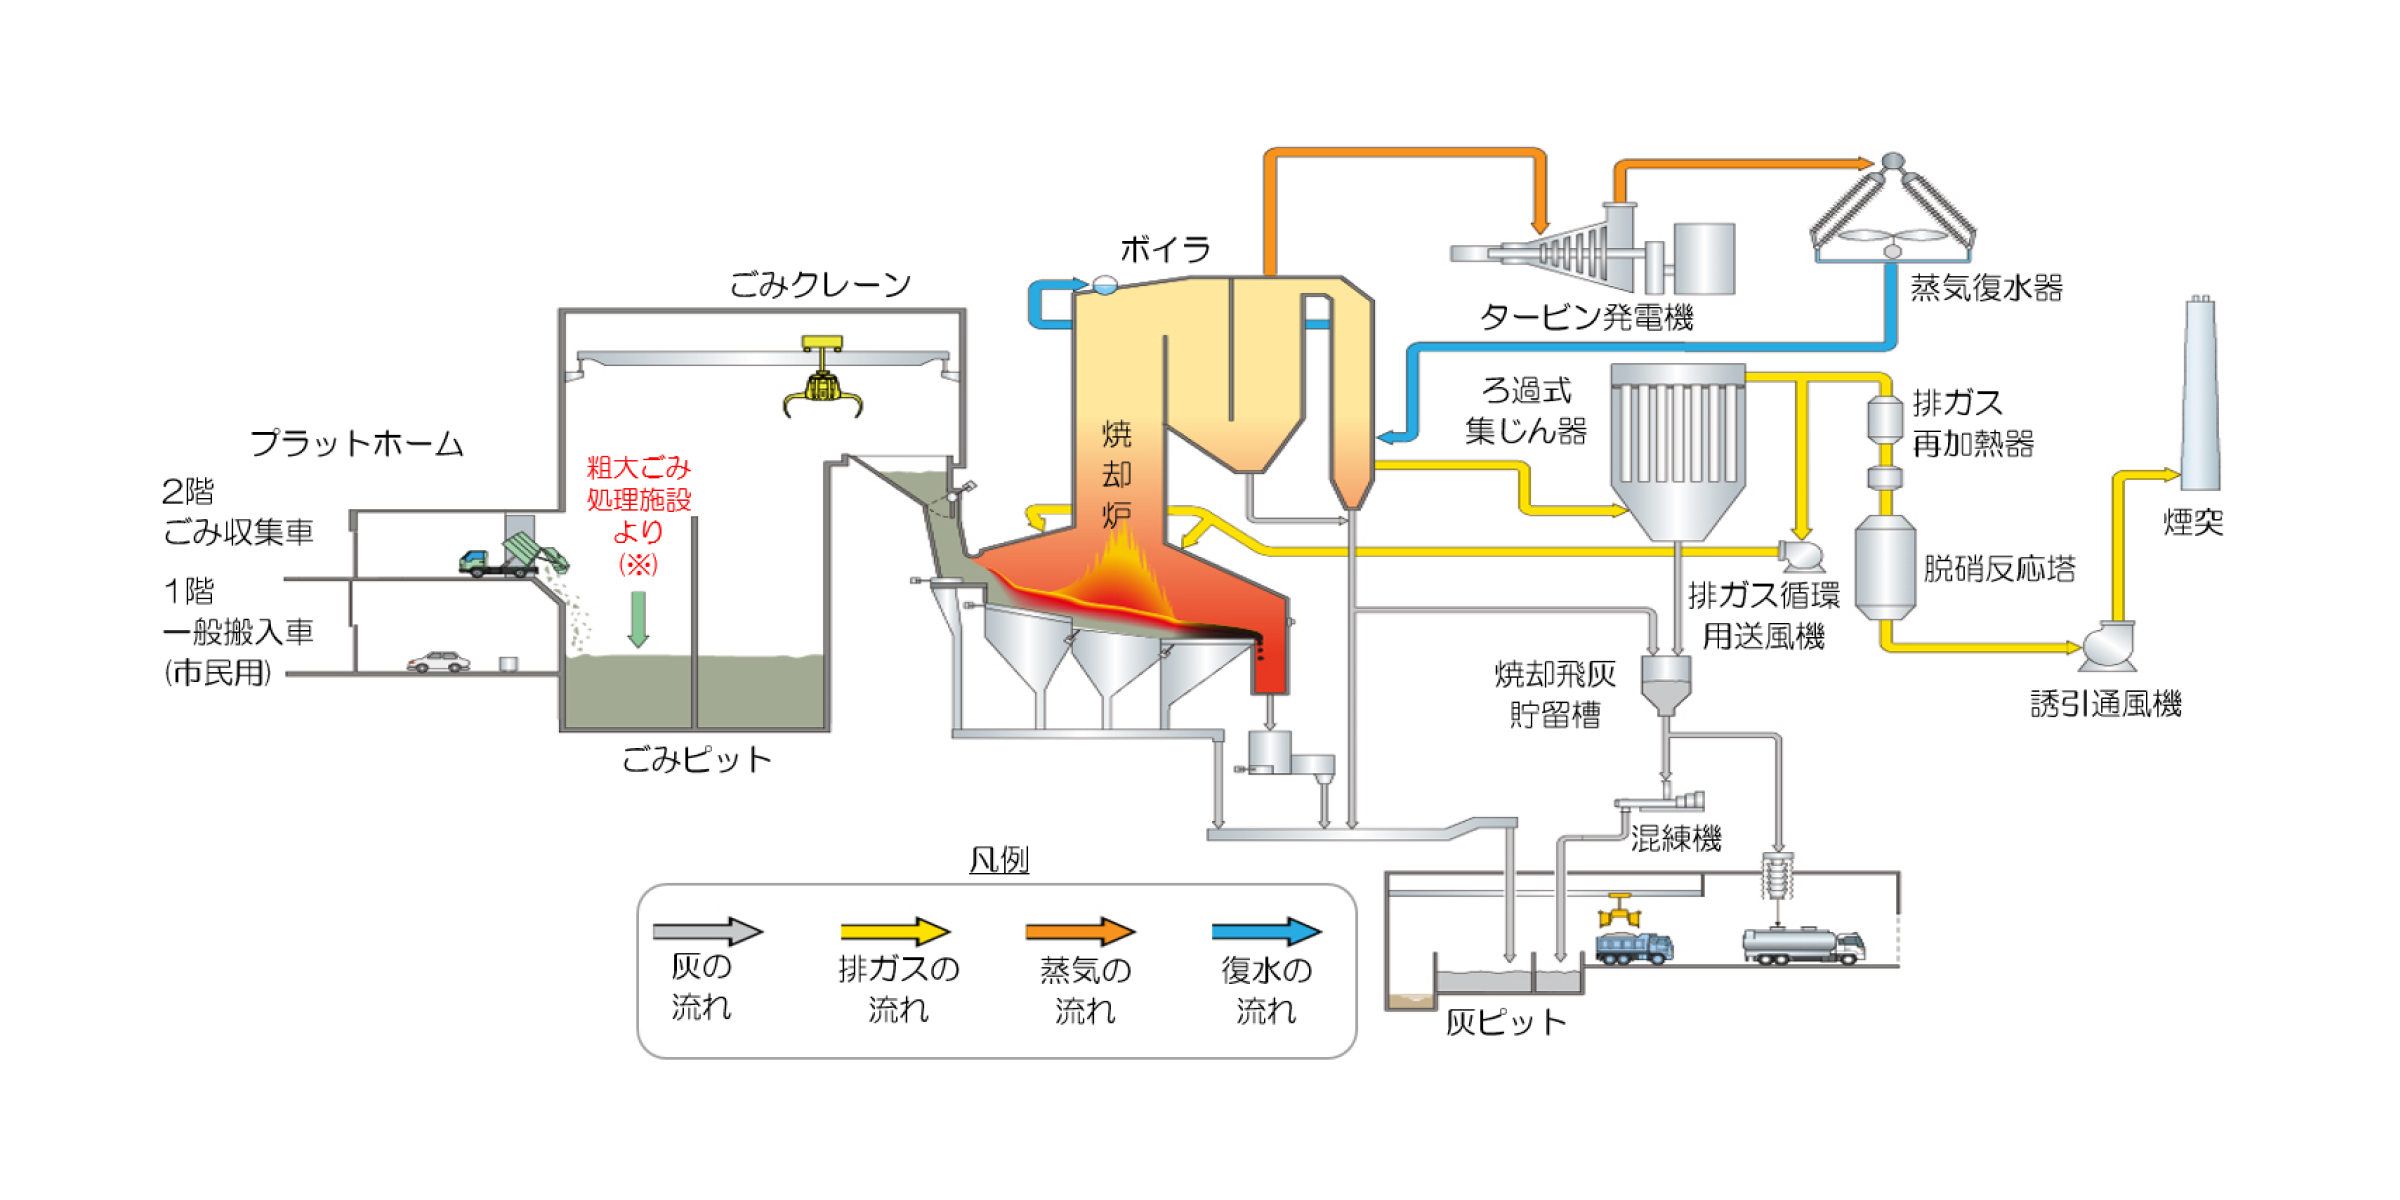 ごみ焼却施設のフロー図